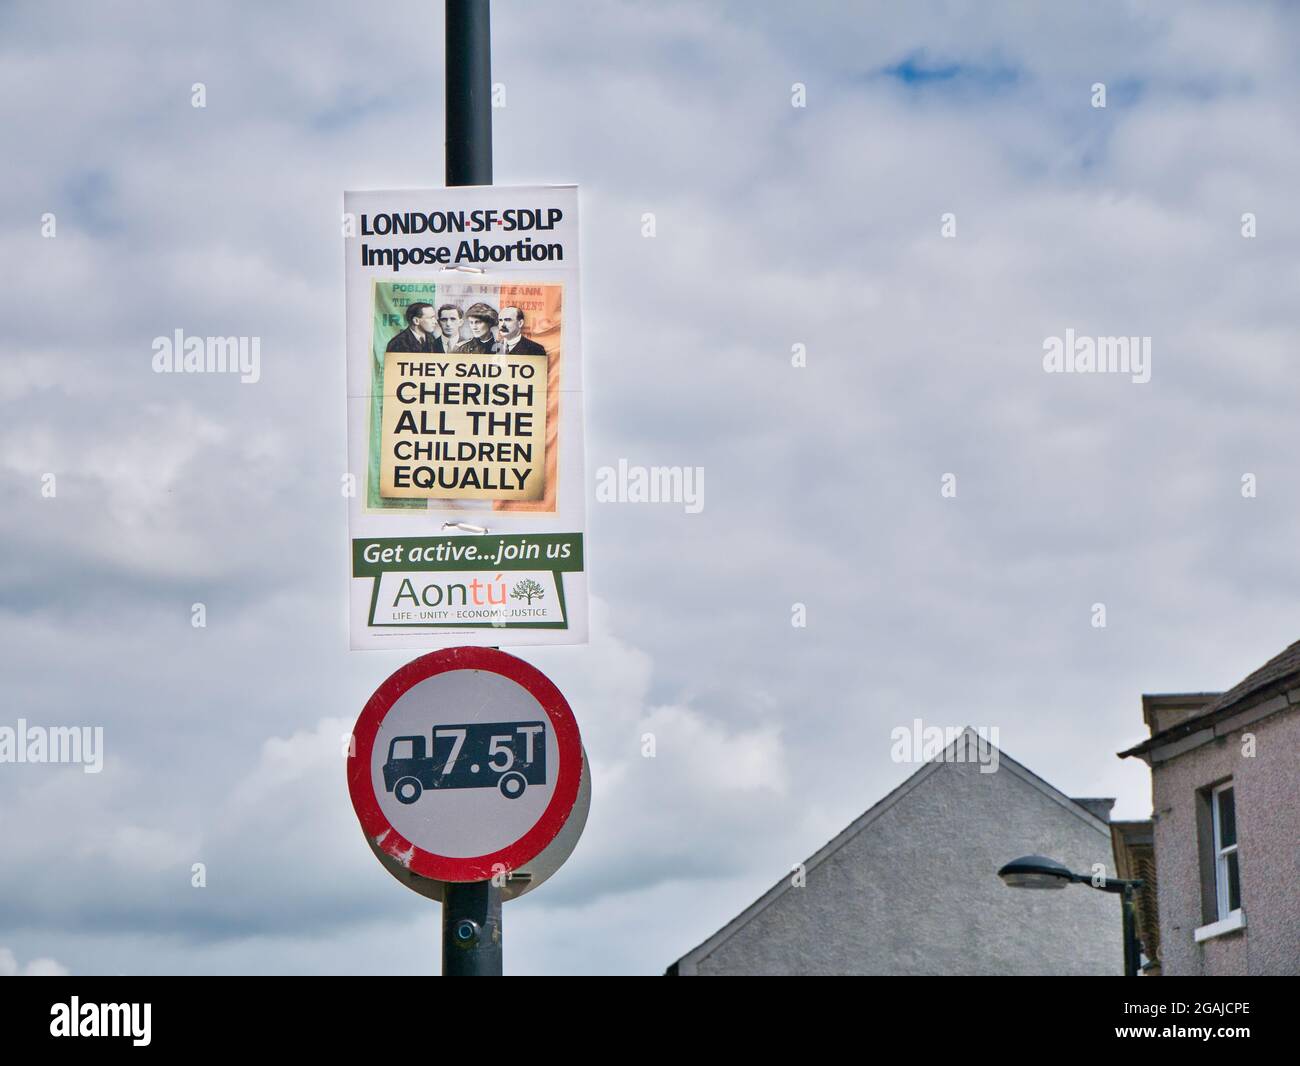 Eine Anti-Abtreibung - lebensfreundliche Botschaft der irischen politischen Partei Aontu auf einem Plakat, das an einem Lampenposten in Armagh, Nordirland, Großbritannien, befestigt ist Stockfoto